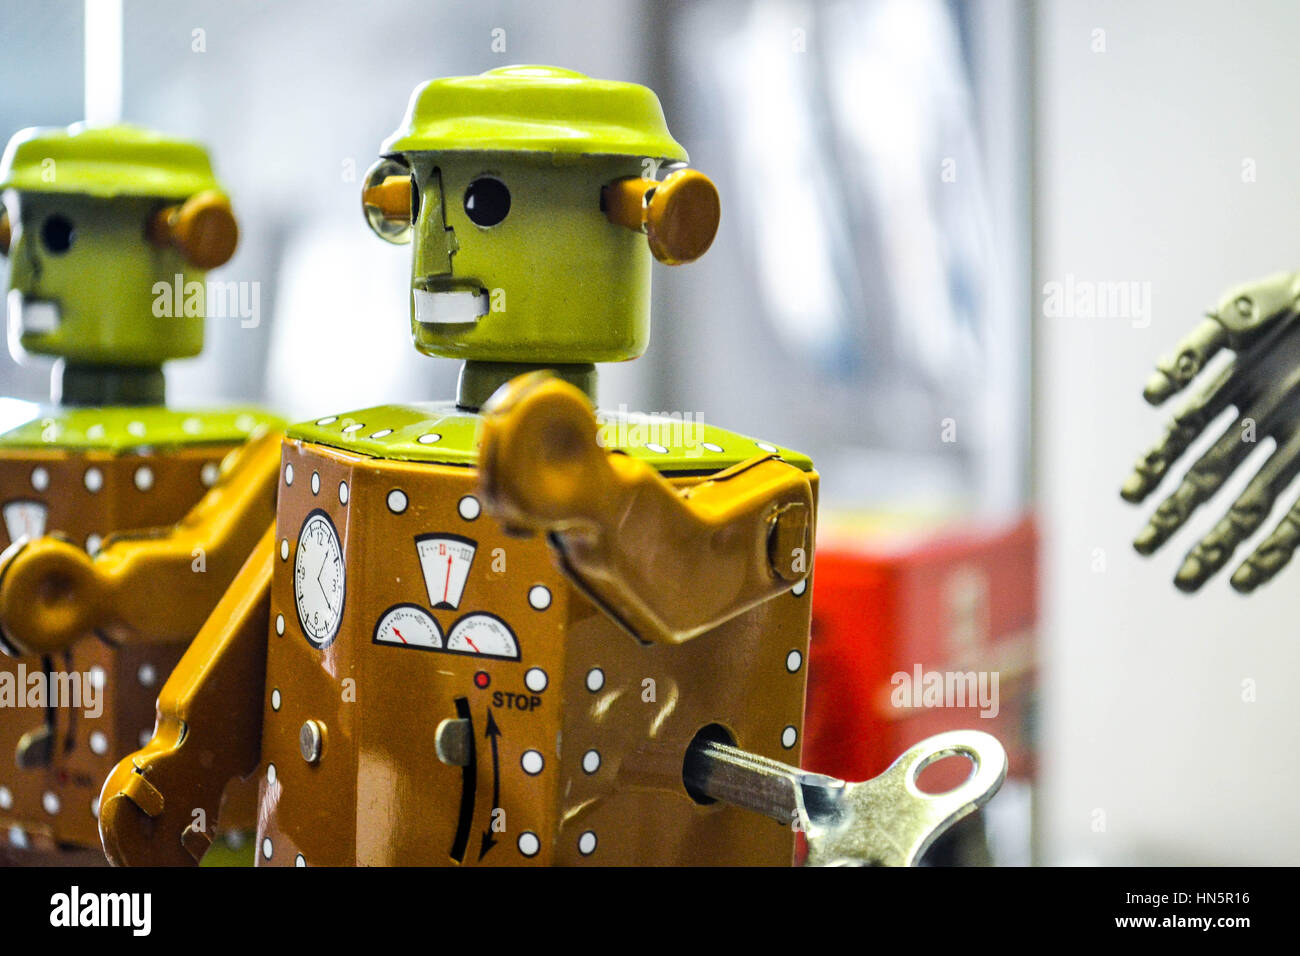 Toy robot at Prague Toy Musuem Stock Photo